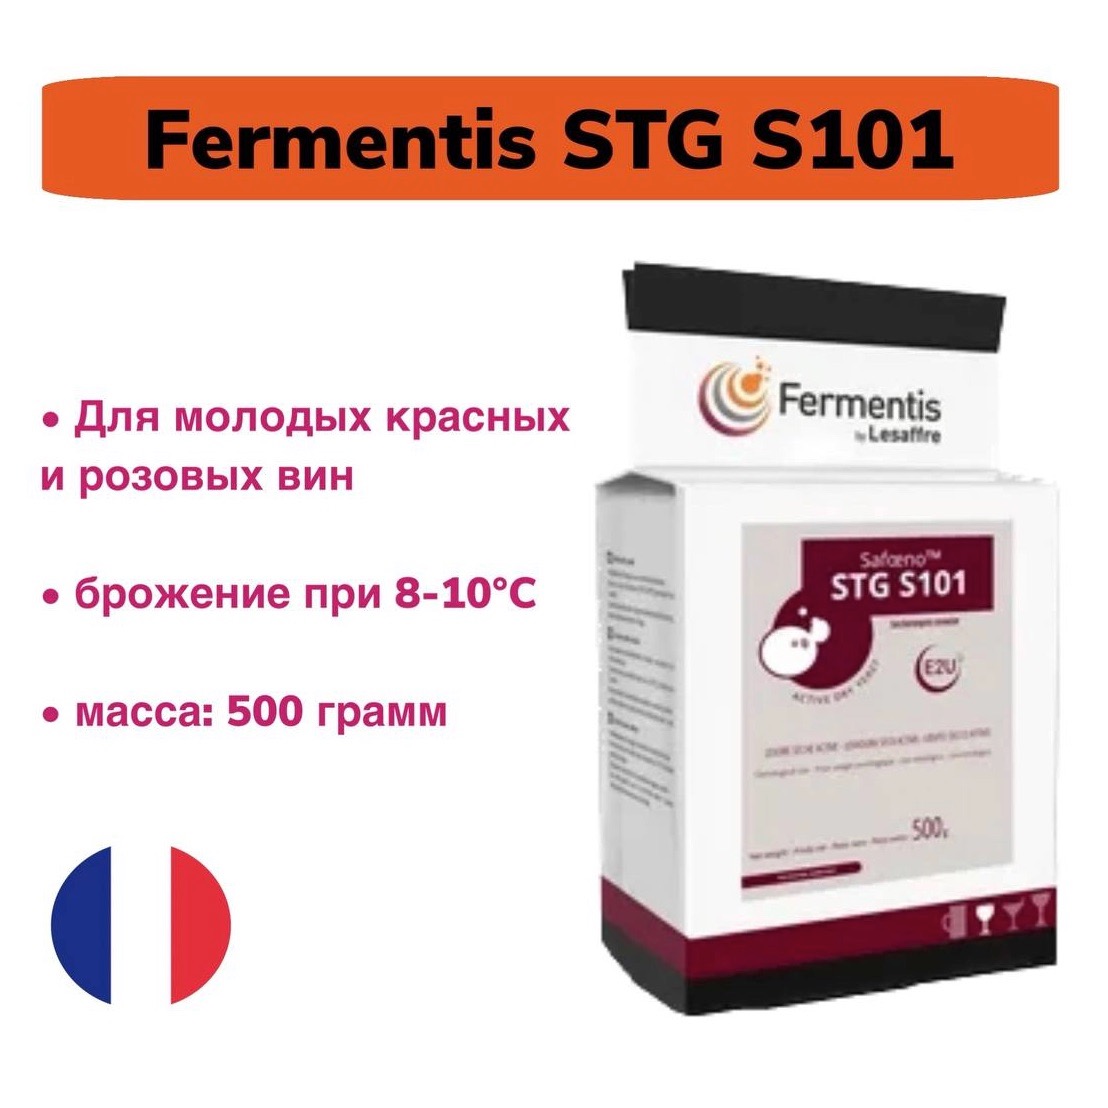 Дрожжи для вина Fermentis STG S101, 500 гр